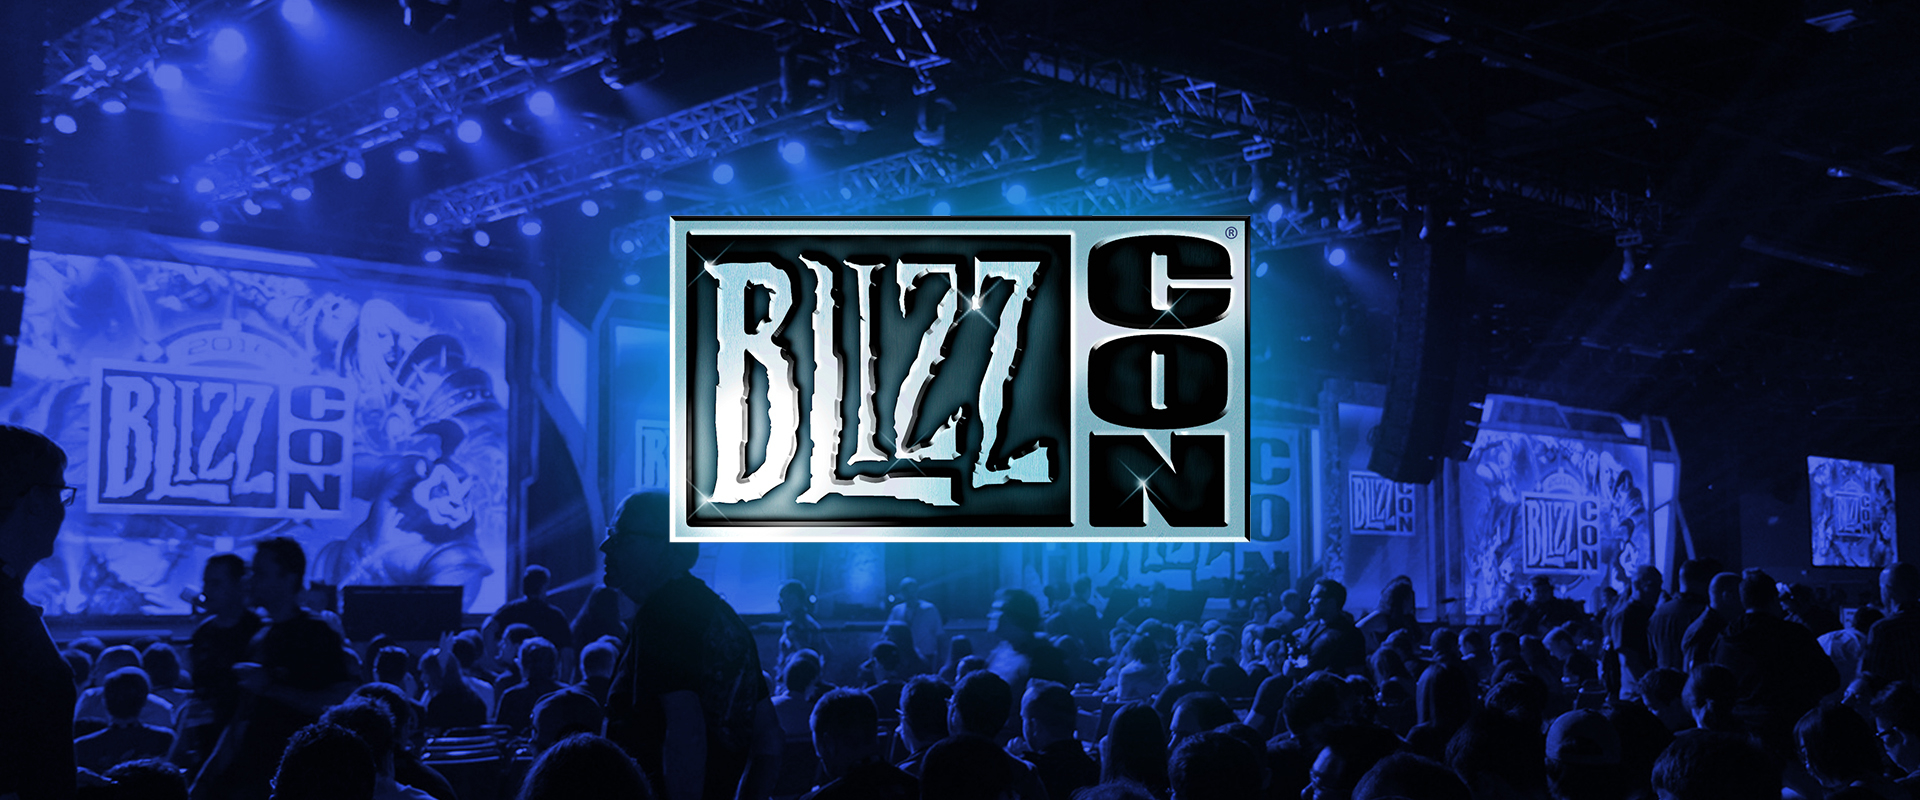 Meccsek, közvetítések, bejelentések - Íme a 2016-os BlizzCon programja